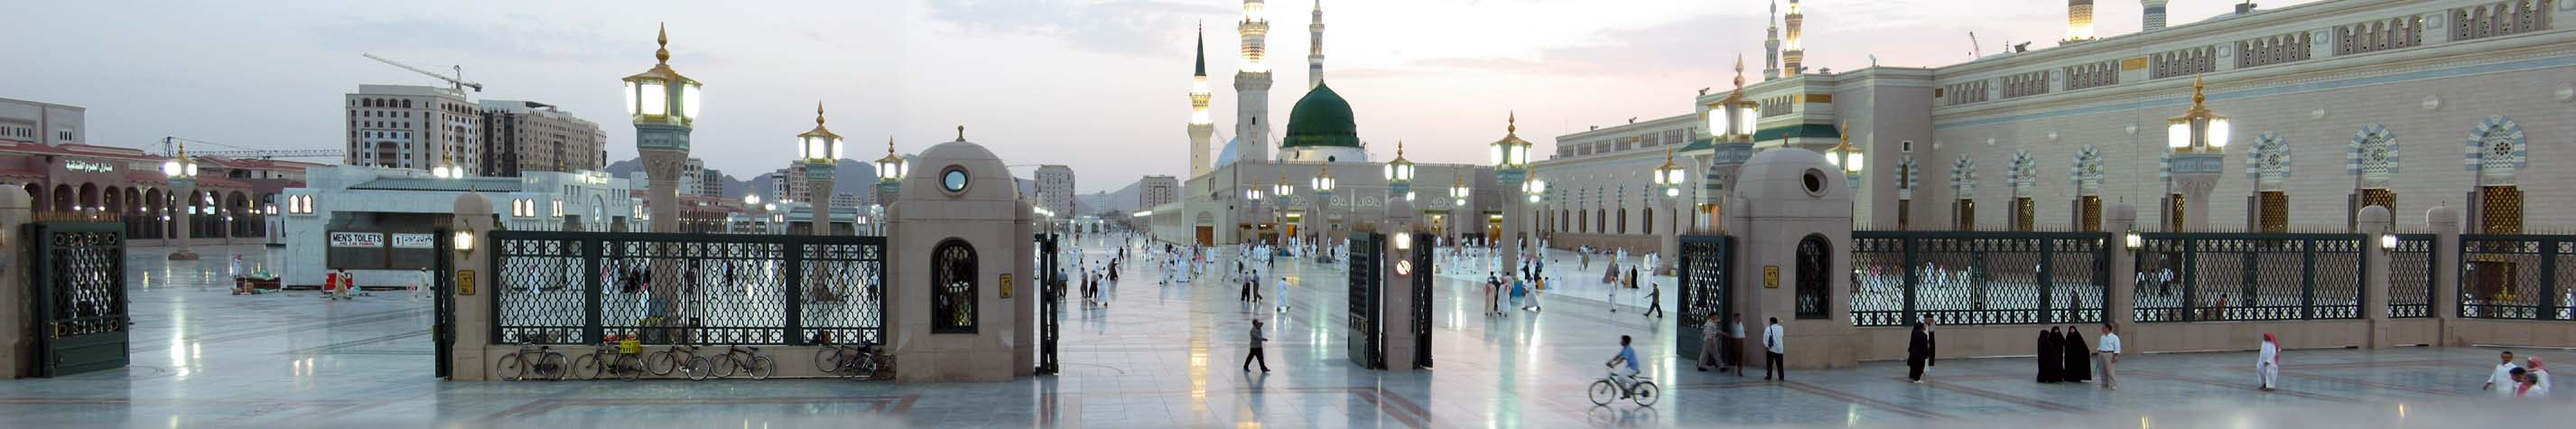 Масджид ан-Набави (Мечеть Пророка) в Медине, Саудовская Аравия, с Зелёным Куполом, построенная над могилой Мухаммеда в центре.jpg